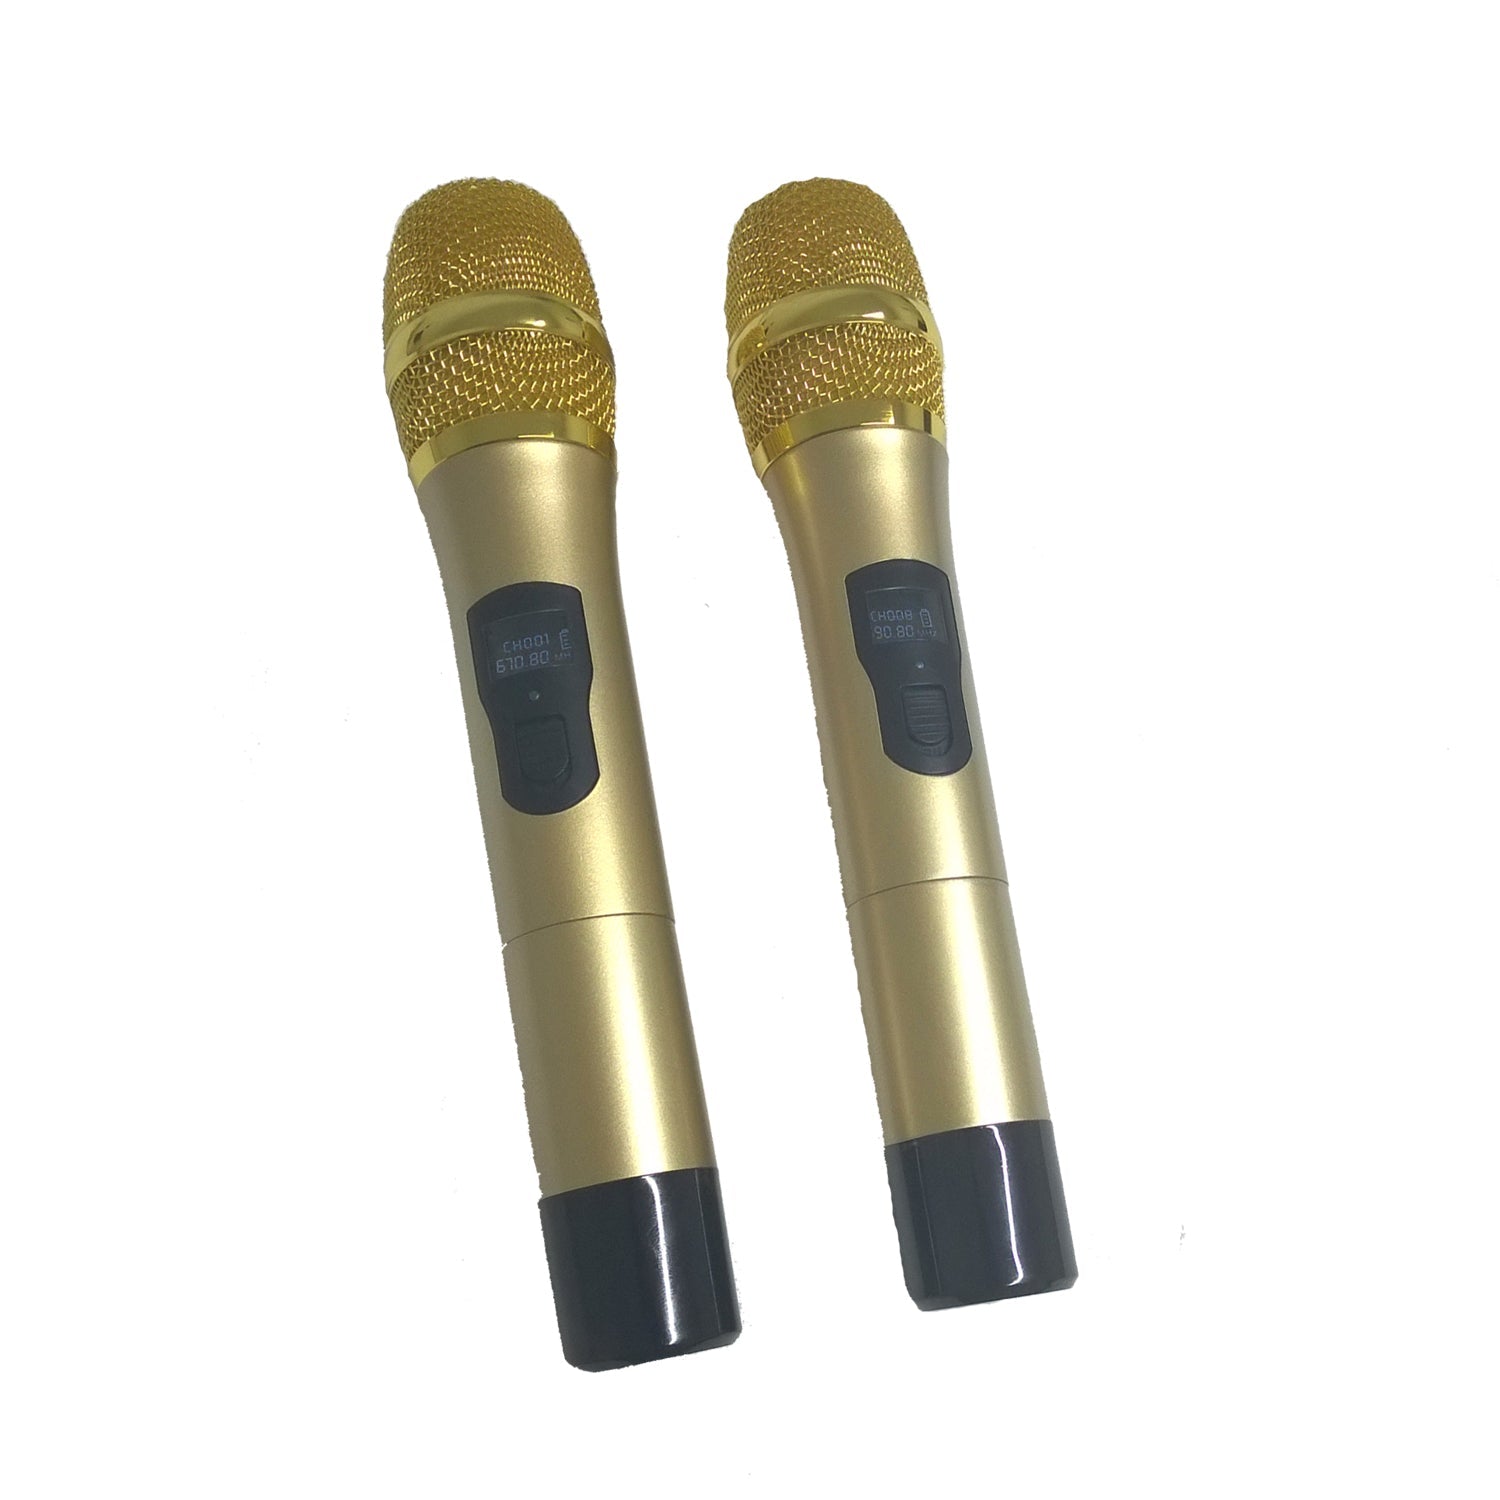 Sonken Max Karaoke UHF Wireless Microphones (Pair) for Series 2, 3 - Karaoke Home Entertainment